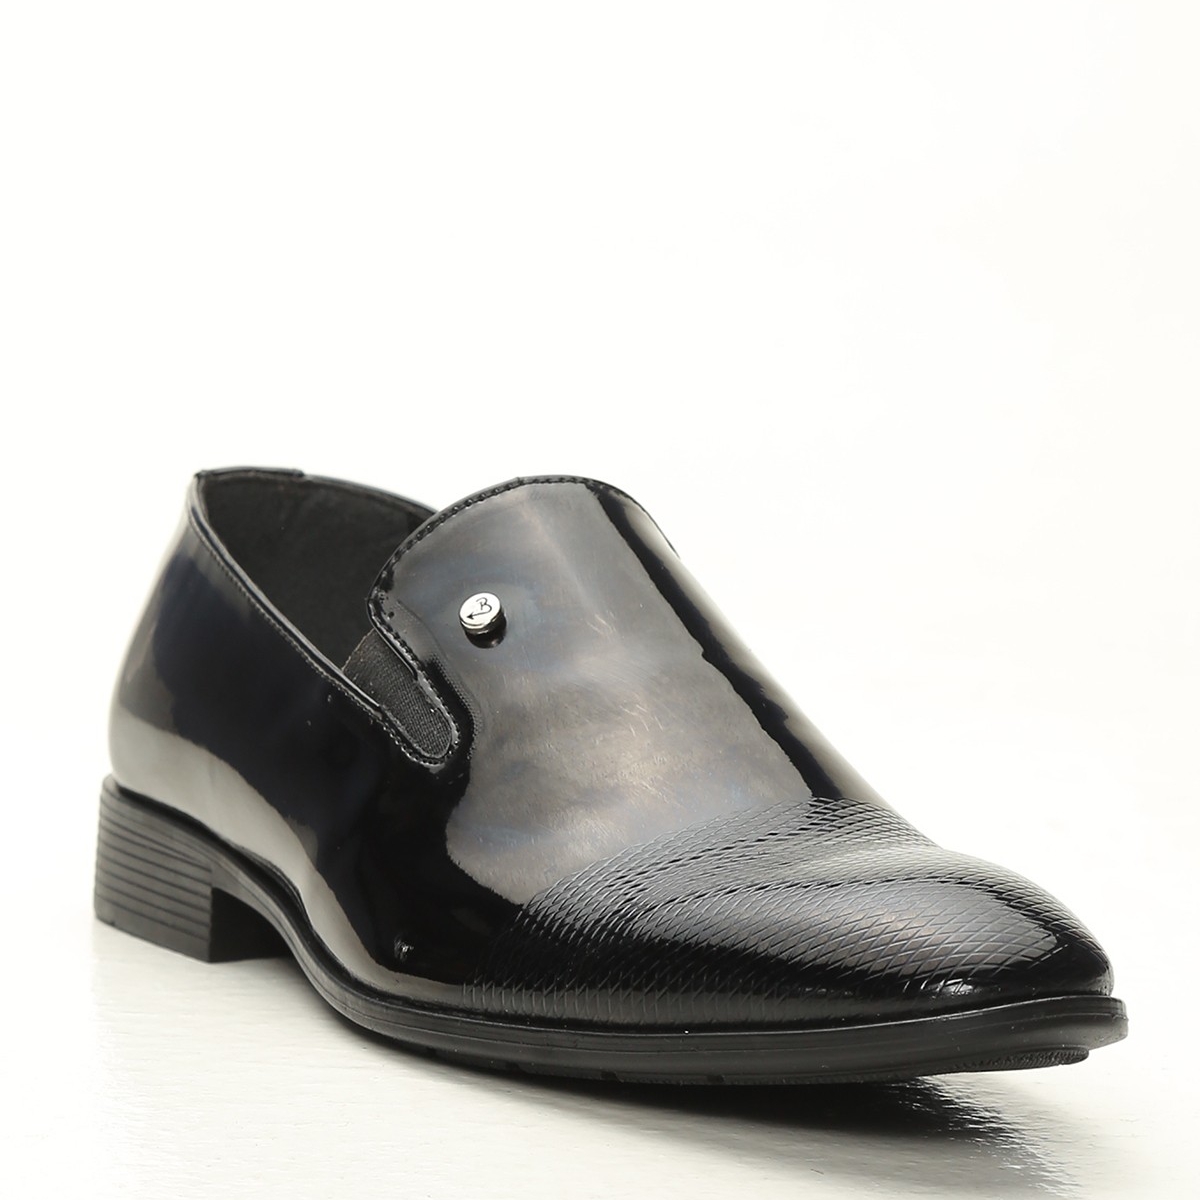 Flo Siyah Erkek Klasik Ayakkabı 1009-20-112005. 2